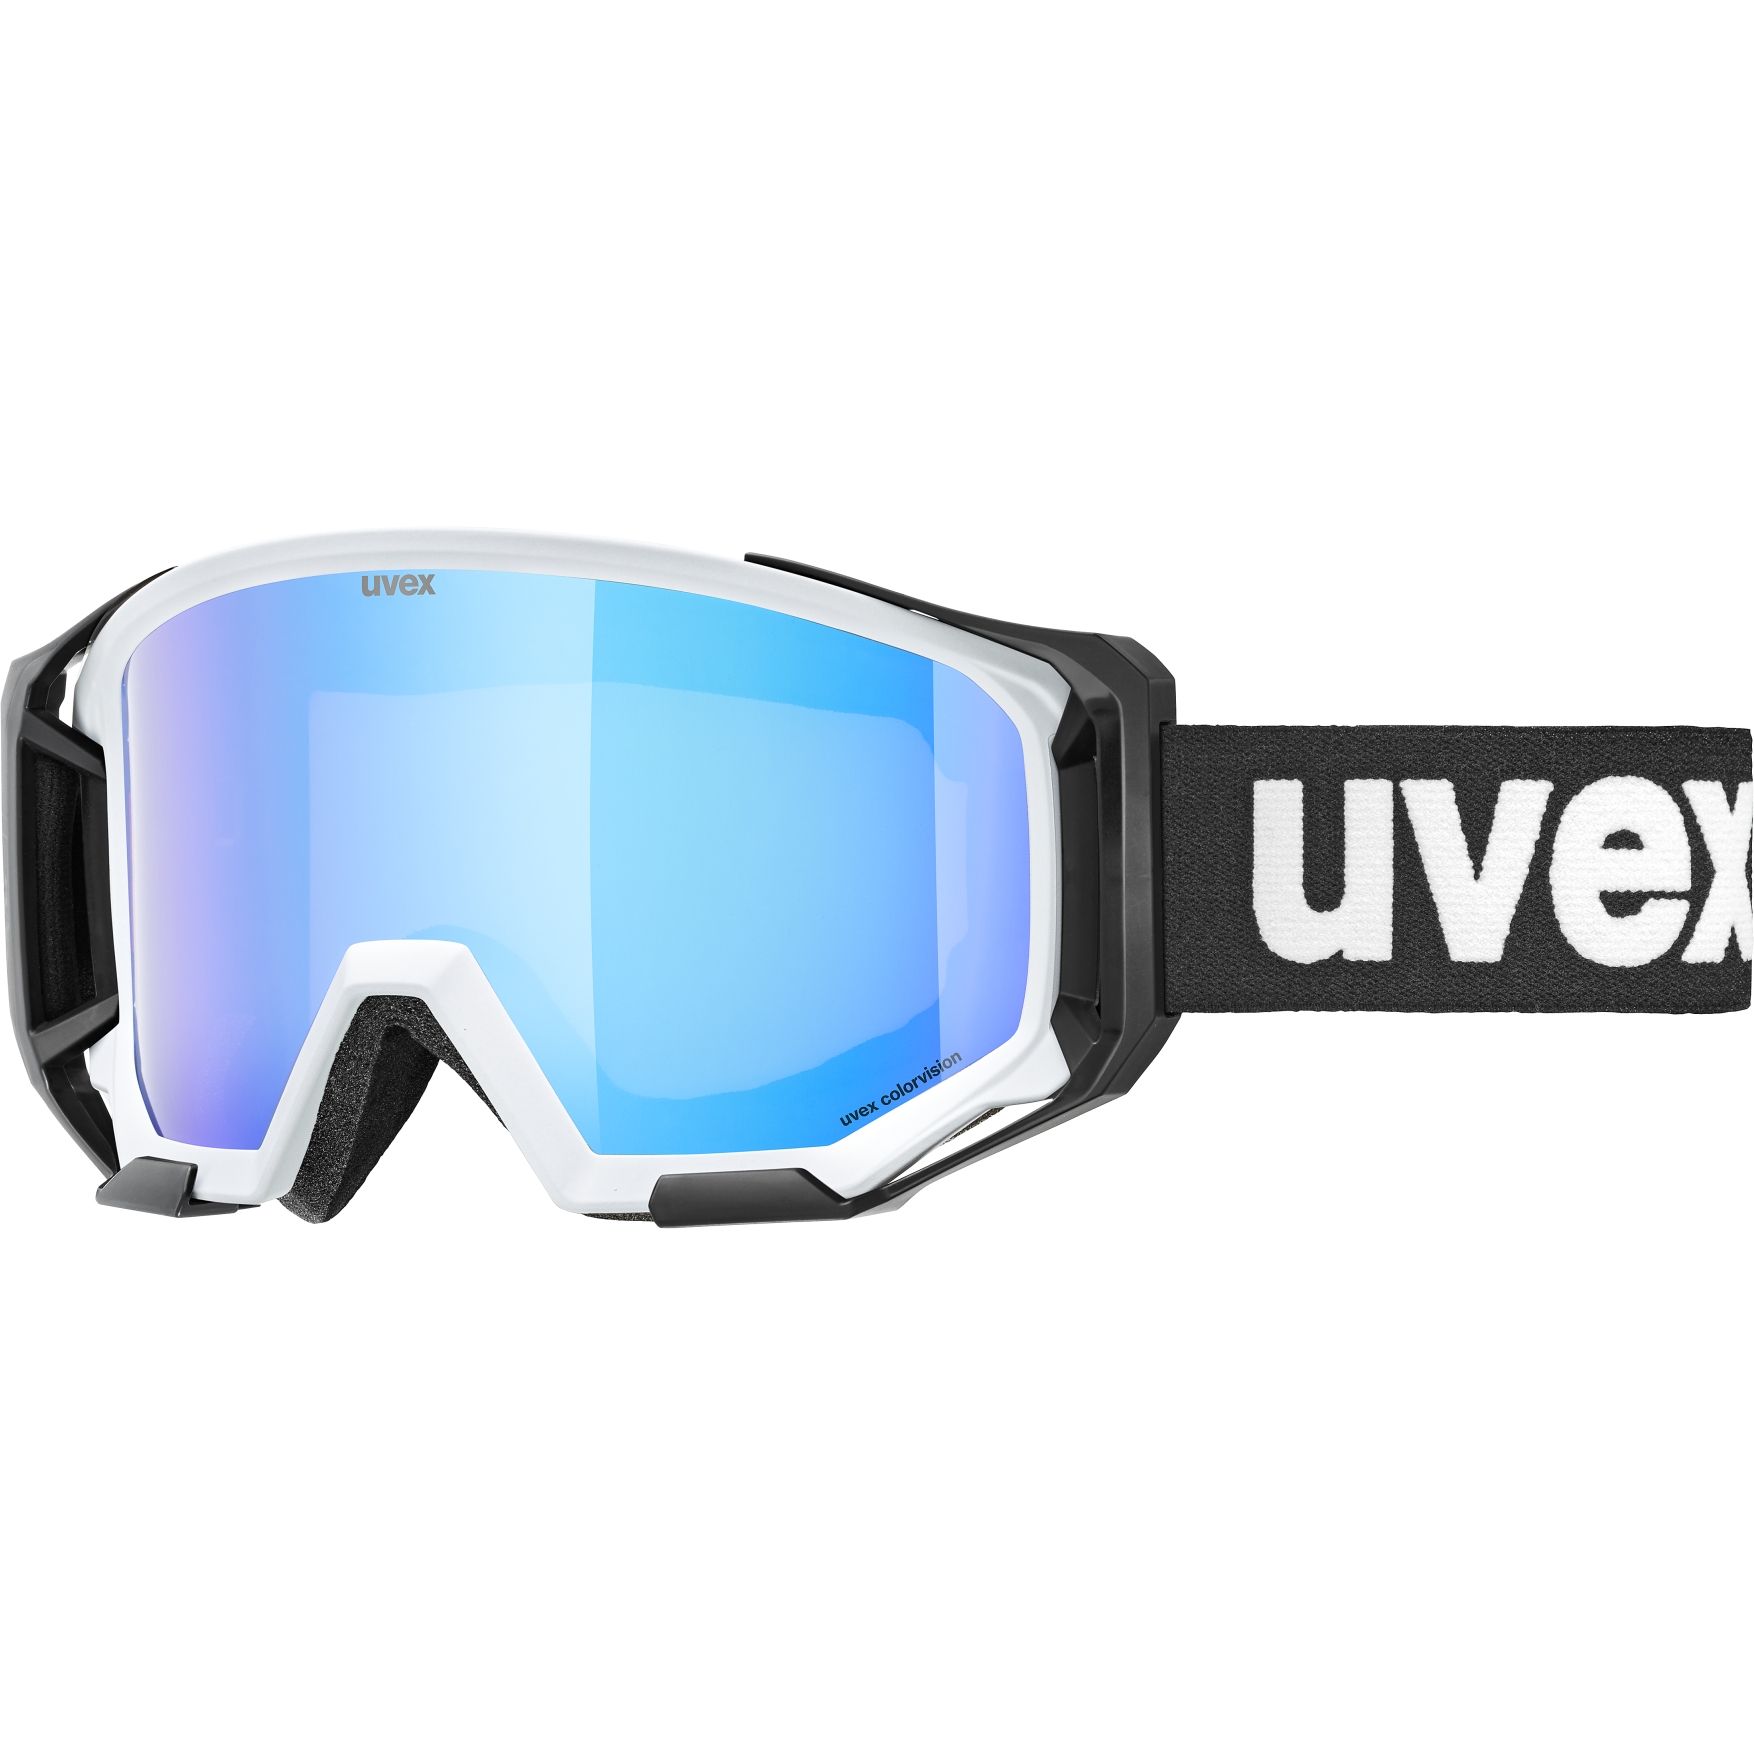 Produktbild von Uvex athletic CV Brille - cloud matt/colorvision green mirror blue